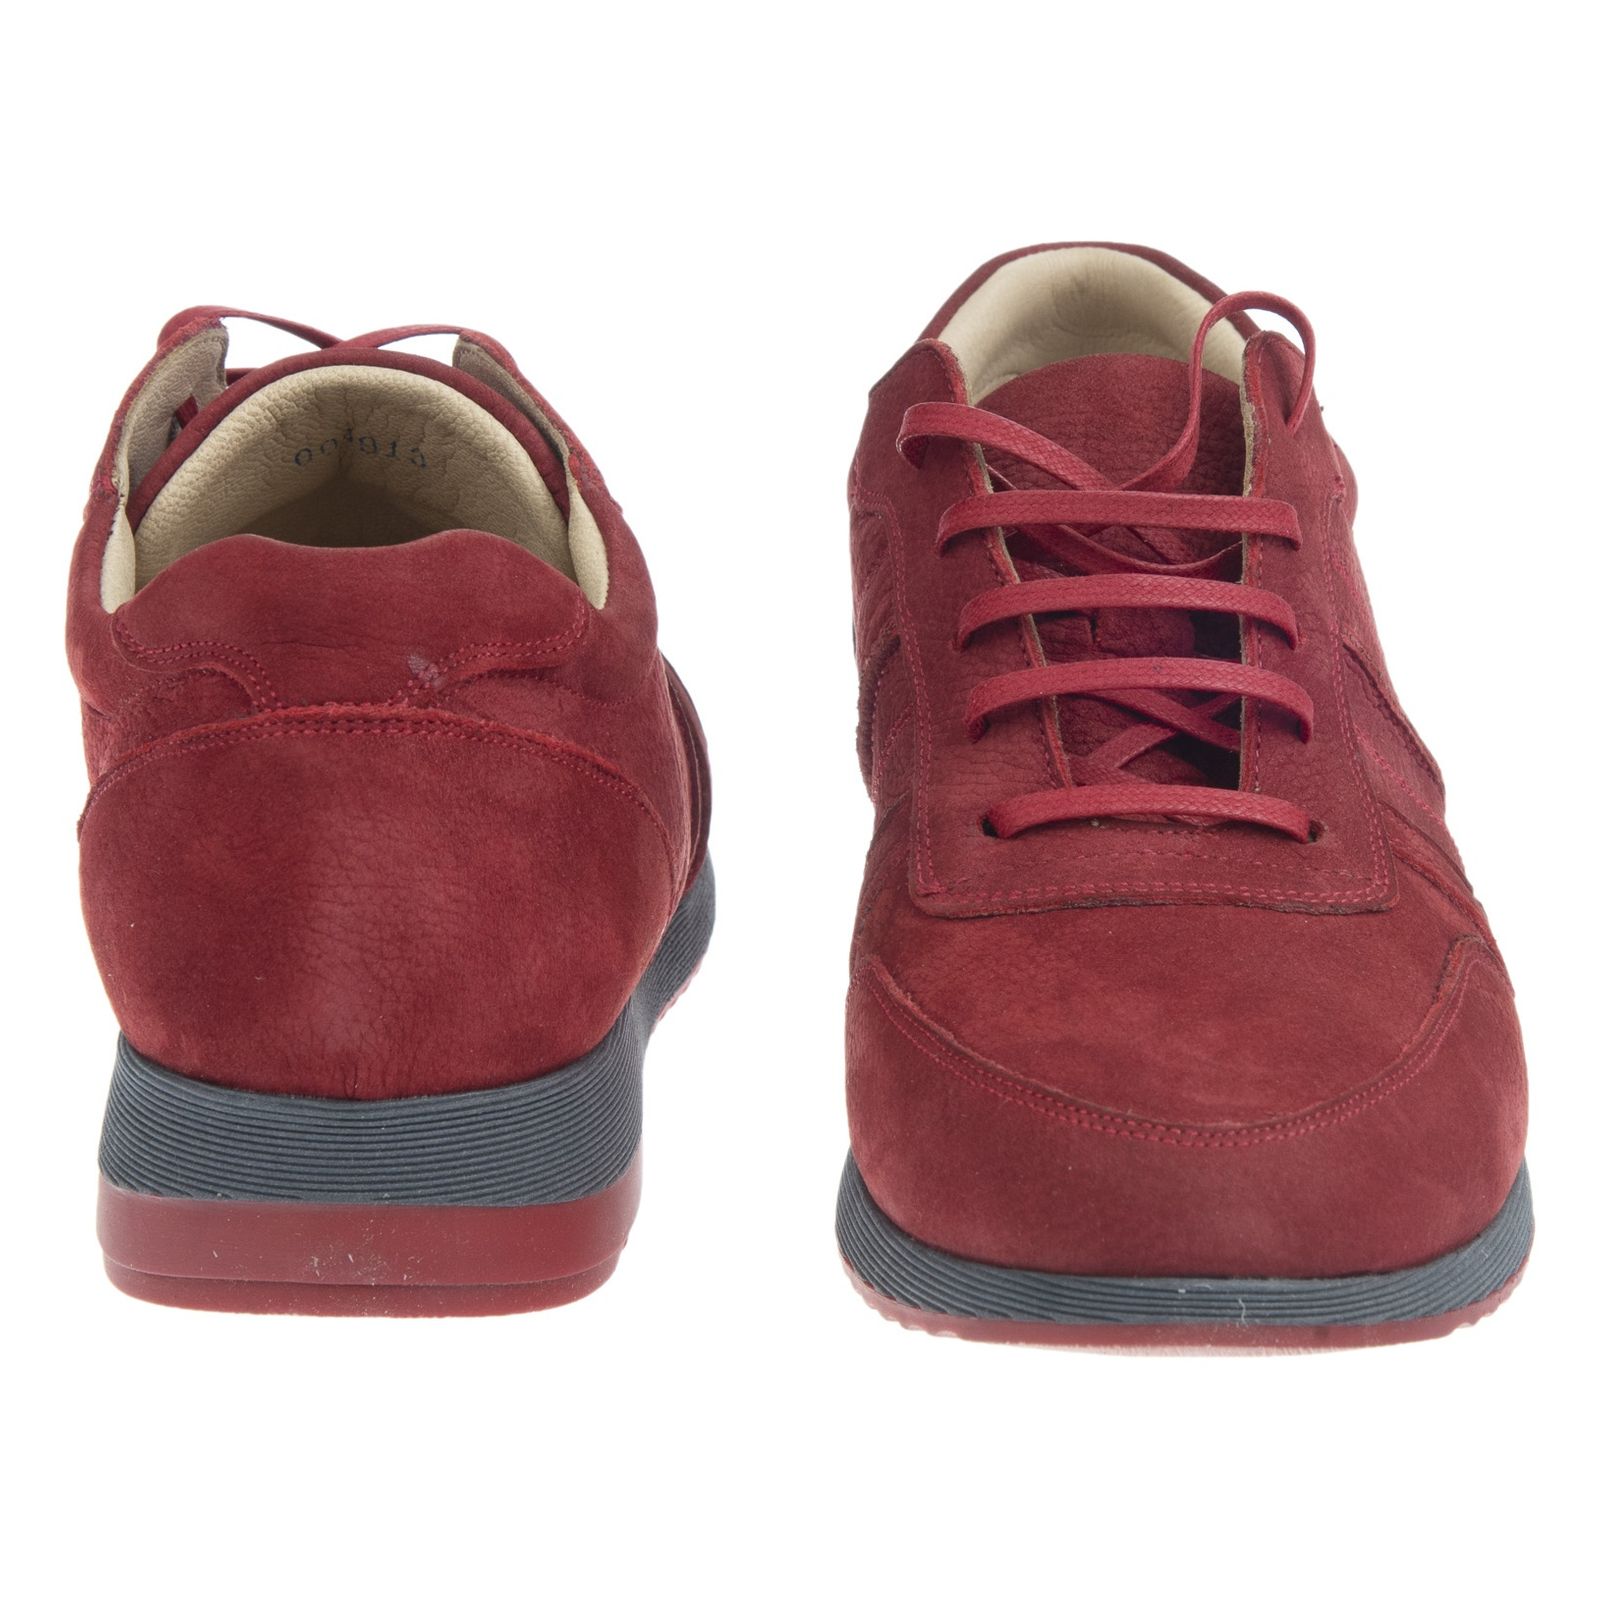 کفش روزمره زنانه برتونیکس مدل 725-24 - قرمز - 5